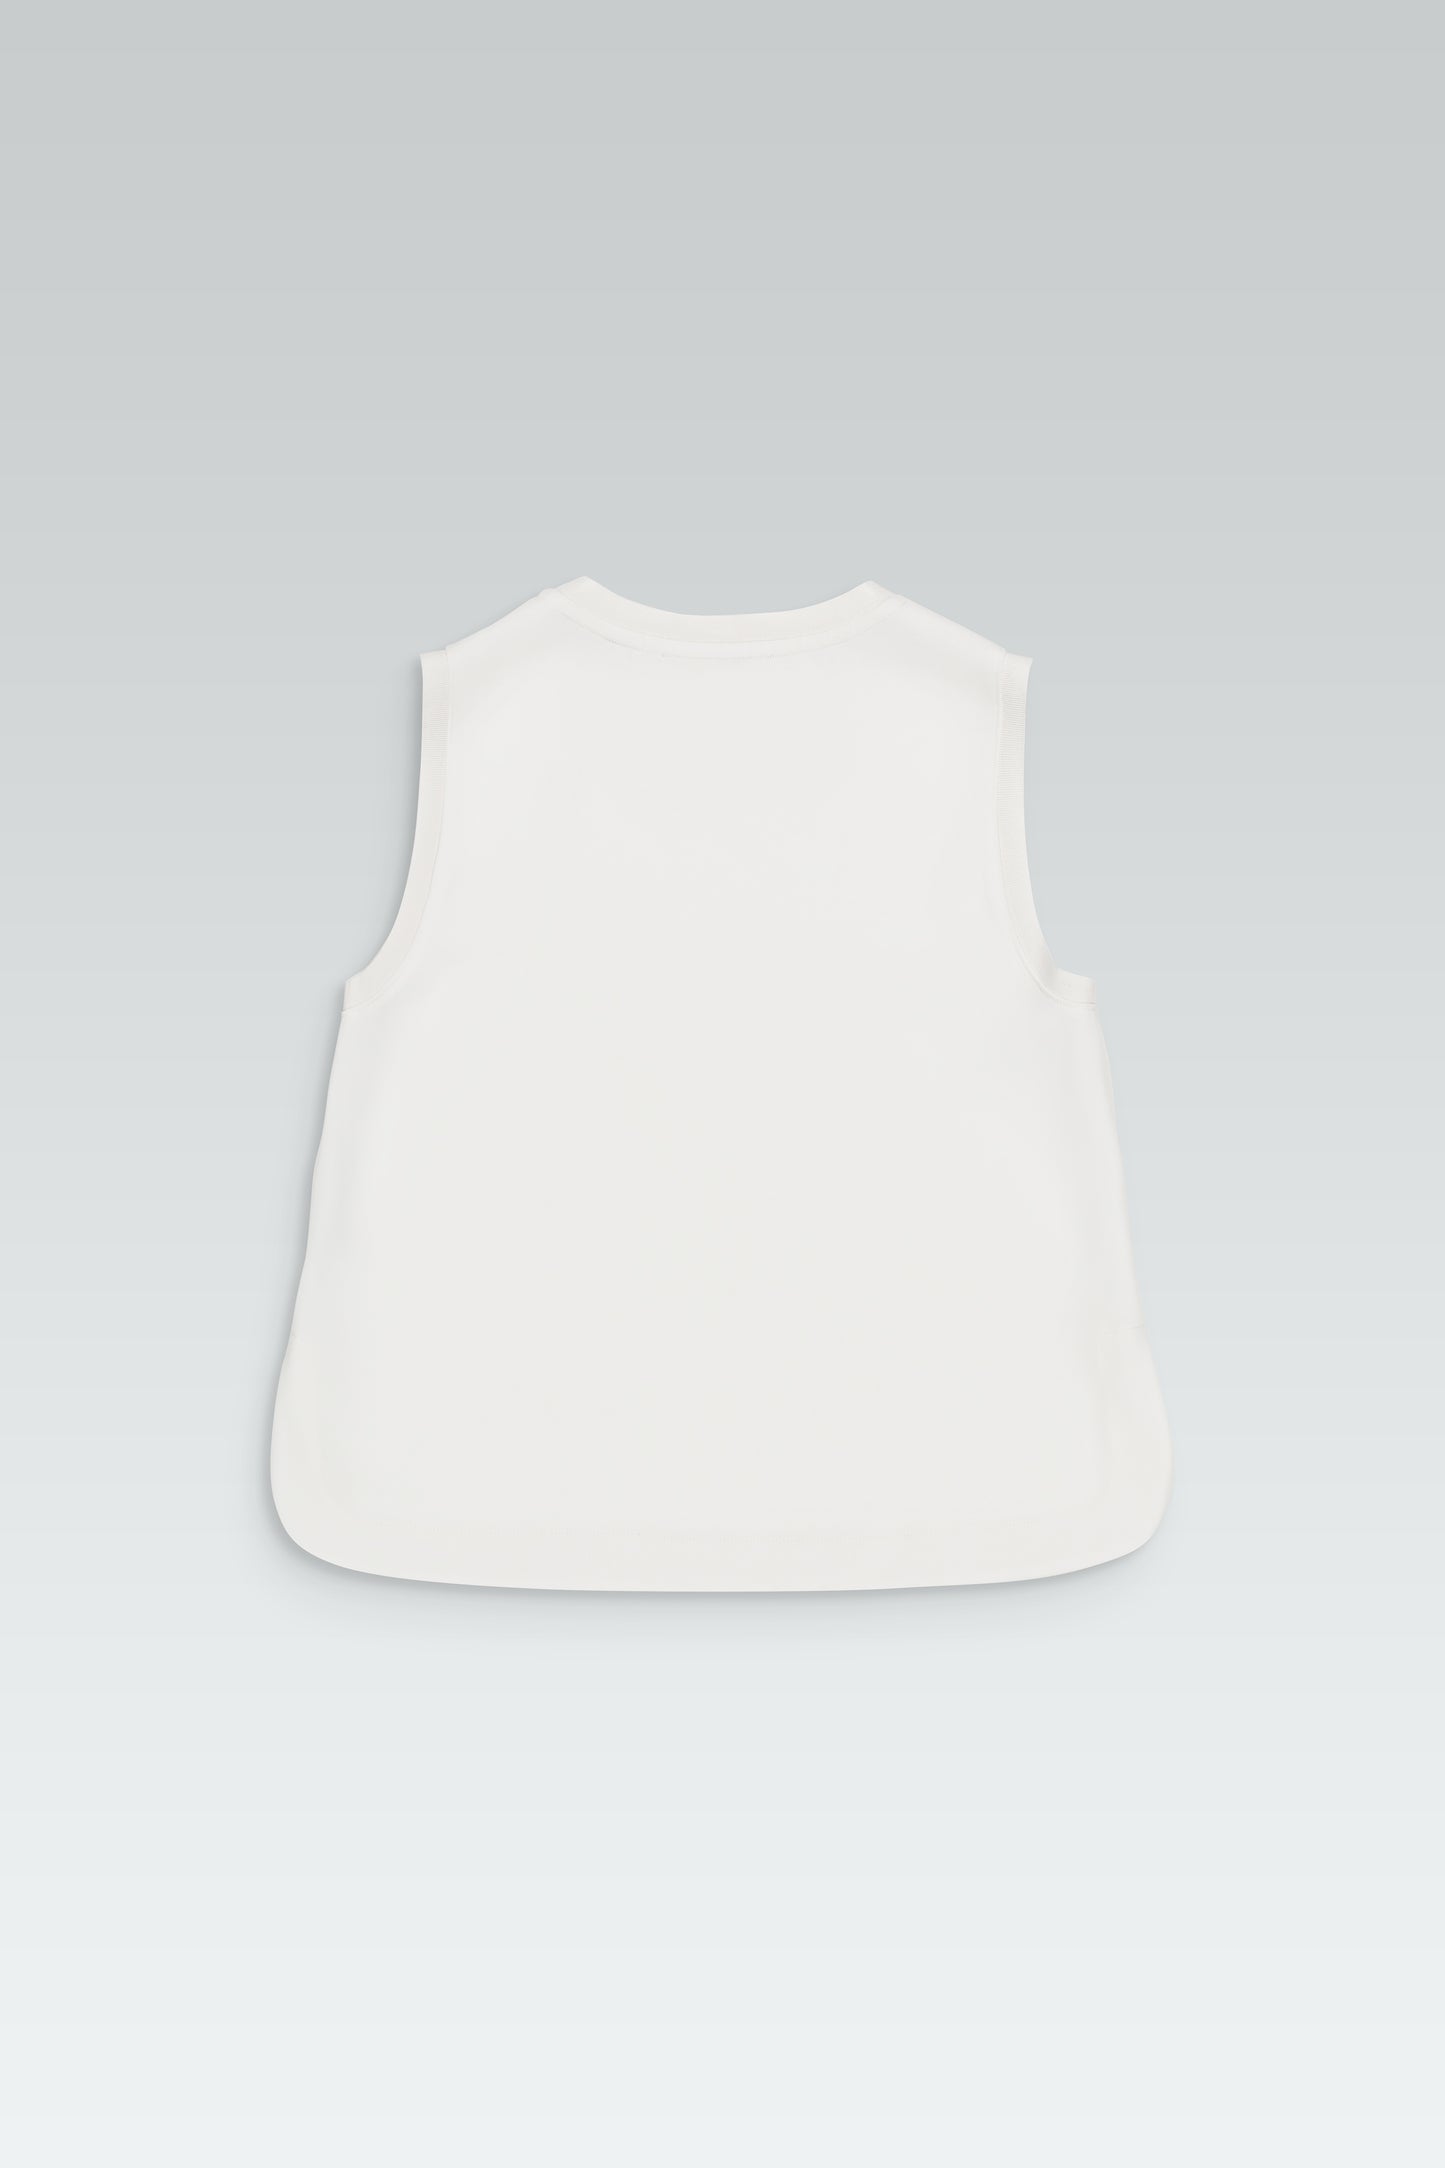 Light, off-white sleeveless top